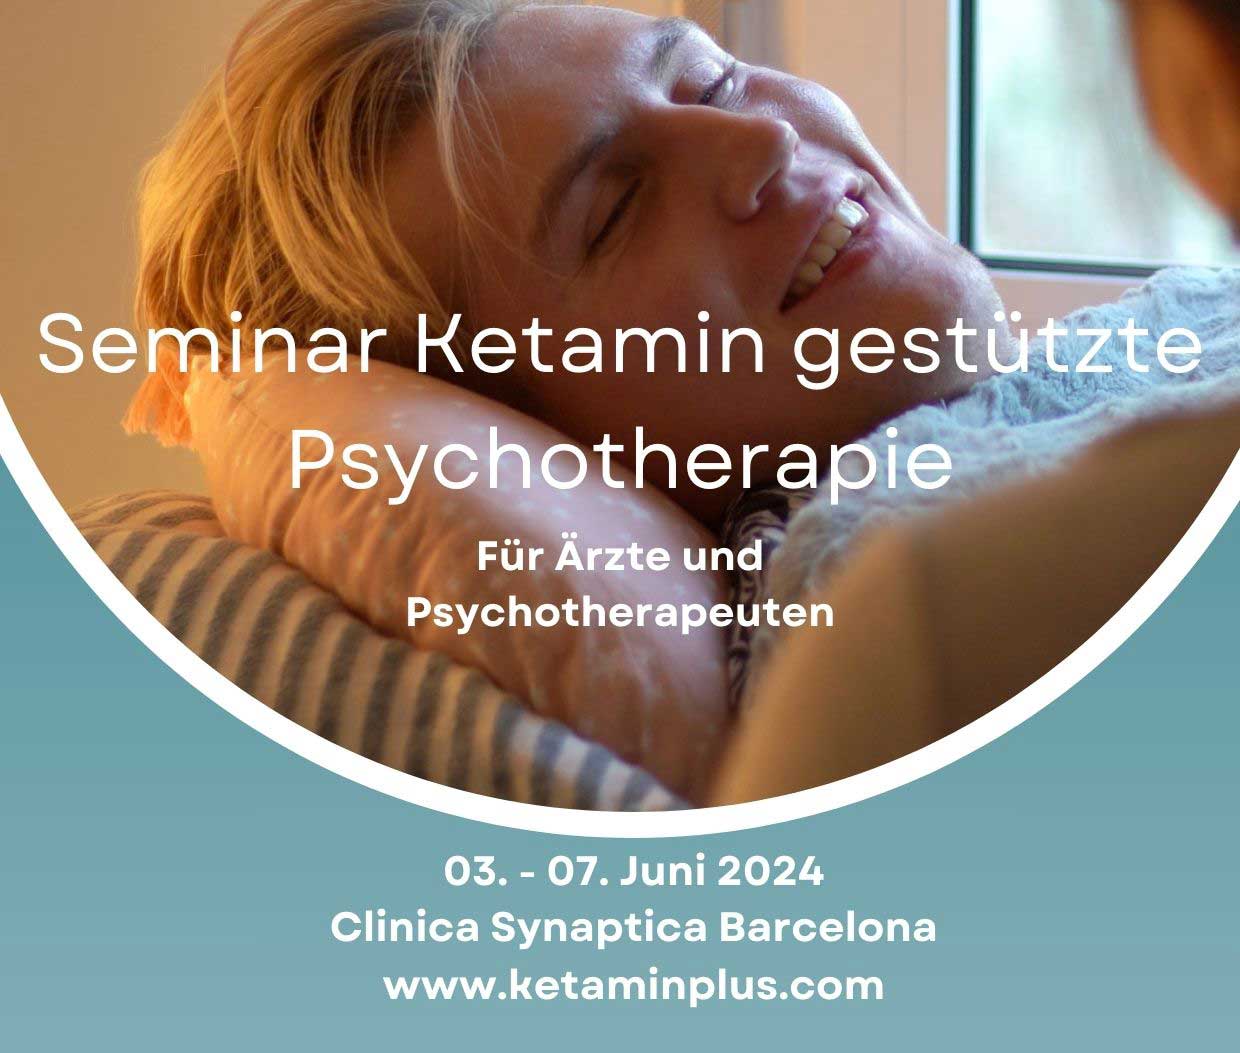 Seminar Ketamin gestützte Psychotherapie